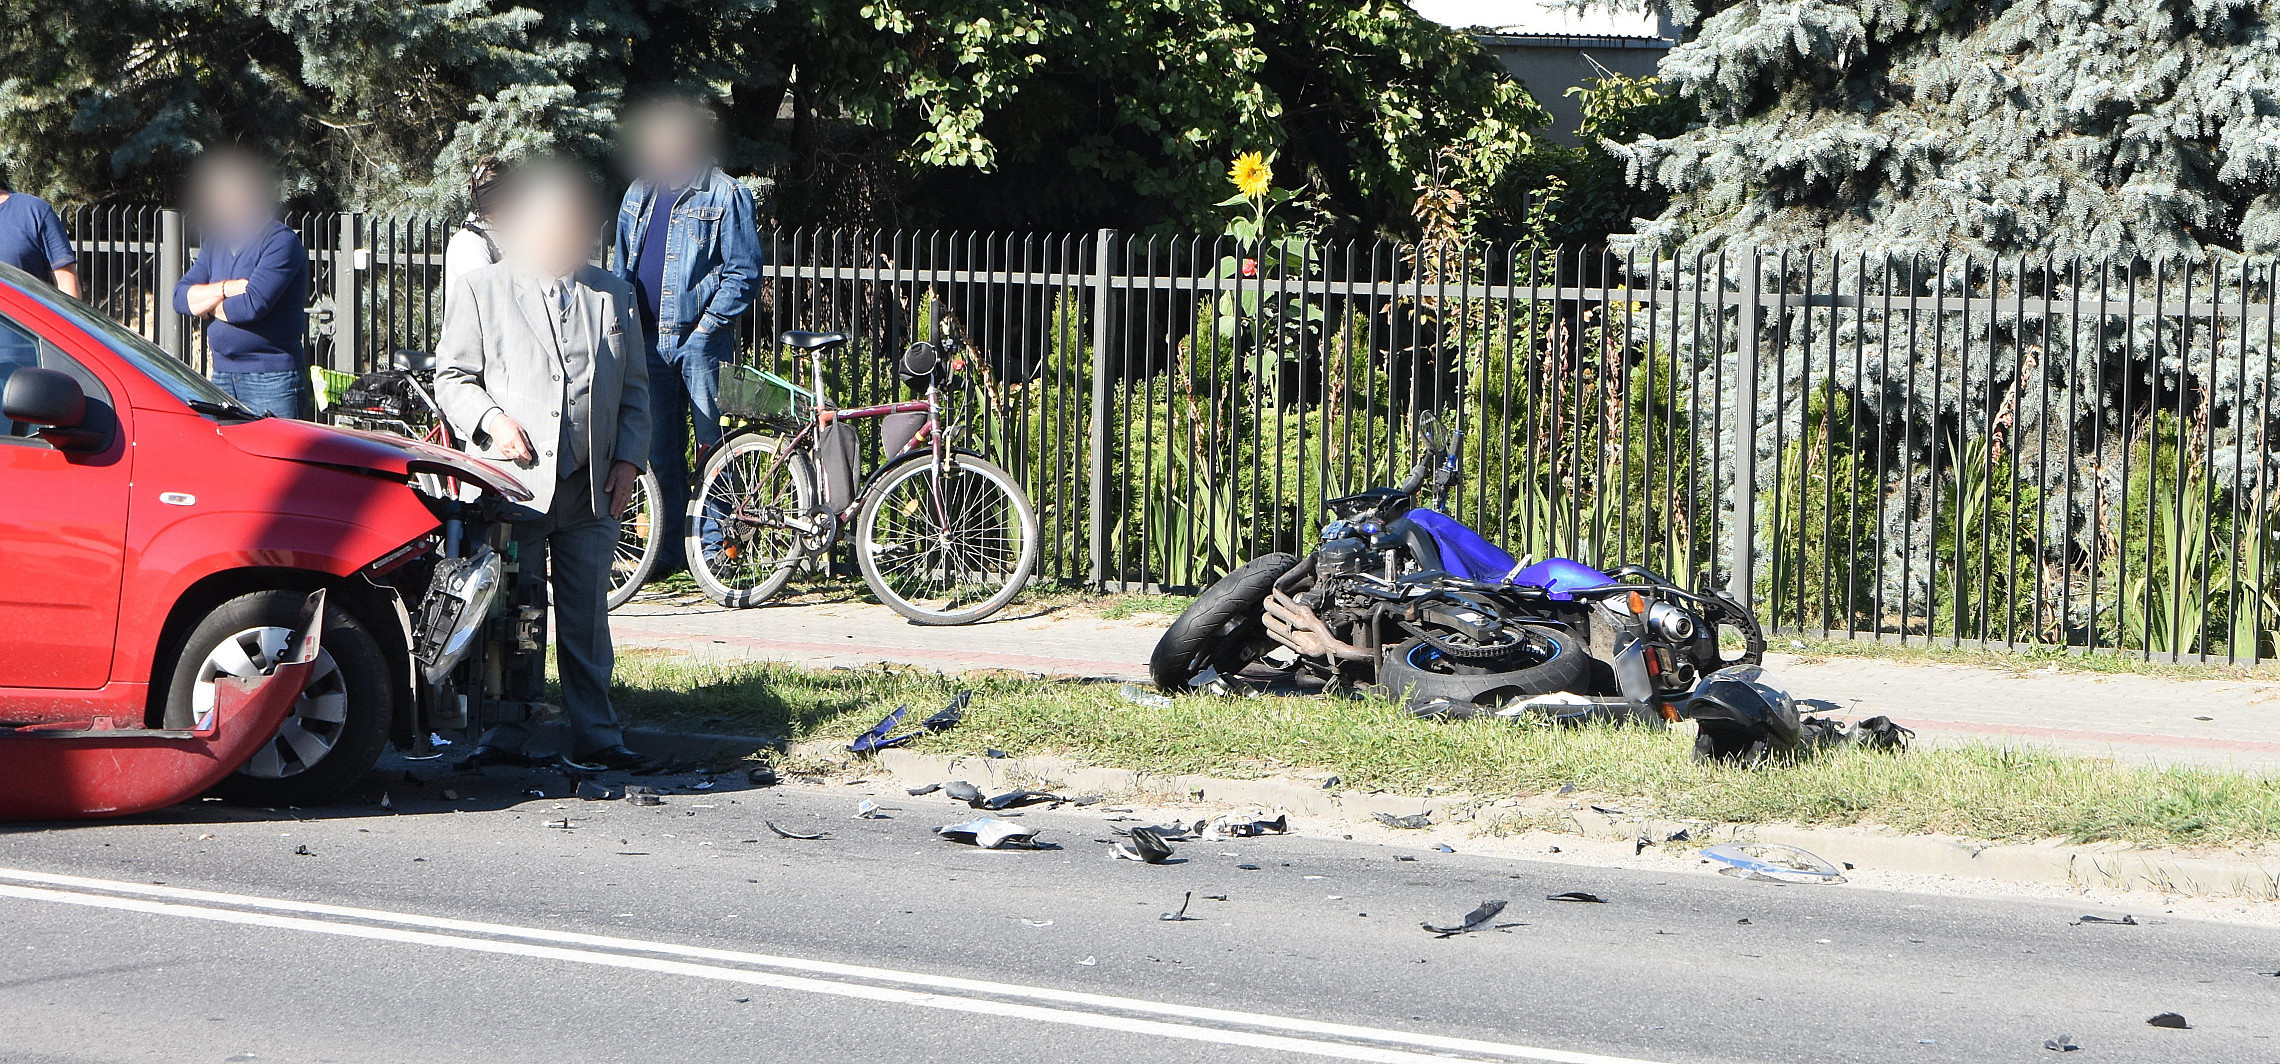 Inowrocław - Motocyklista zderzył się z osobówką